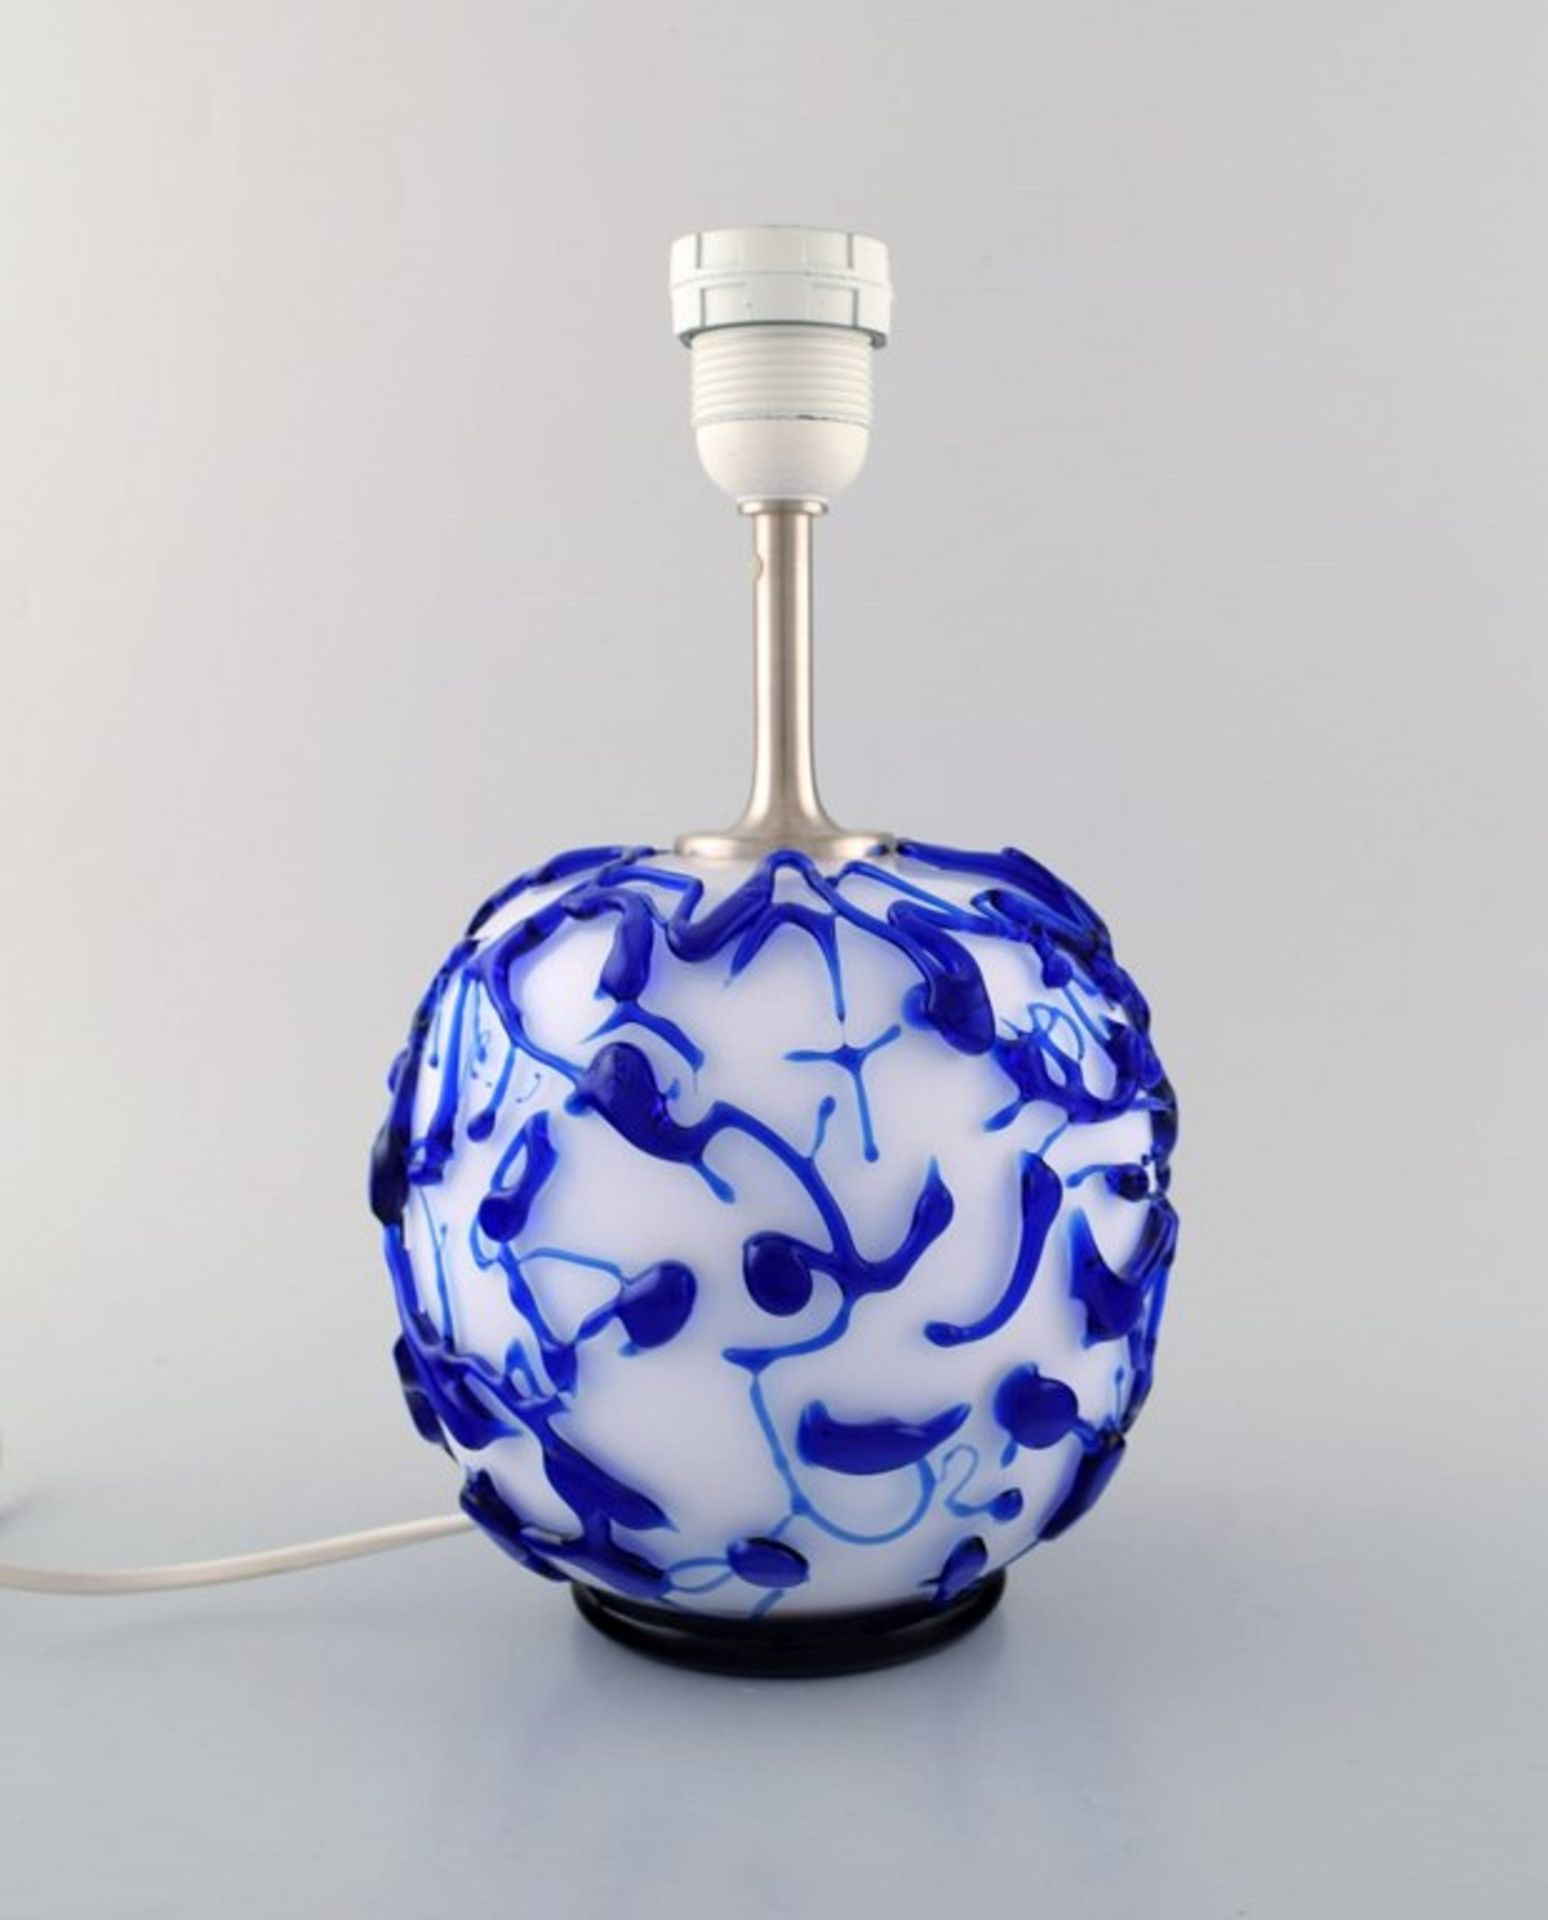 Kastrup / Holmegaard. Seltene kugelförmige Tischlampe aus weißem und blauem Kunstglas. Modernes